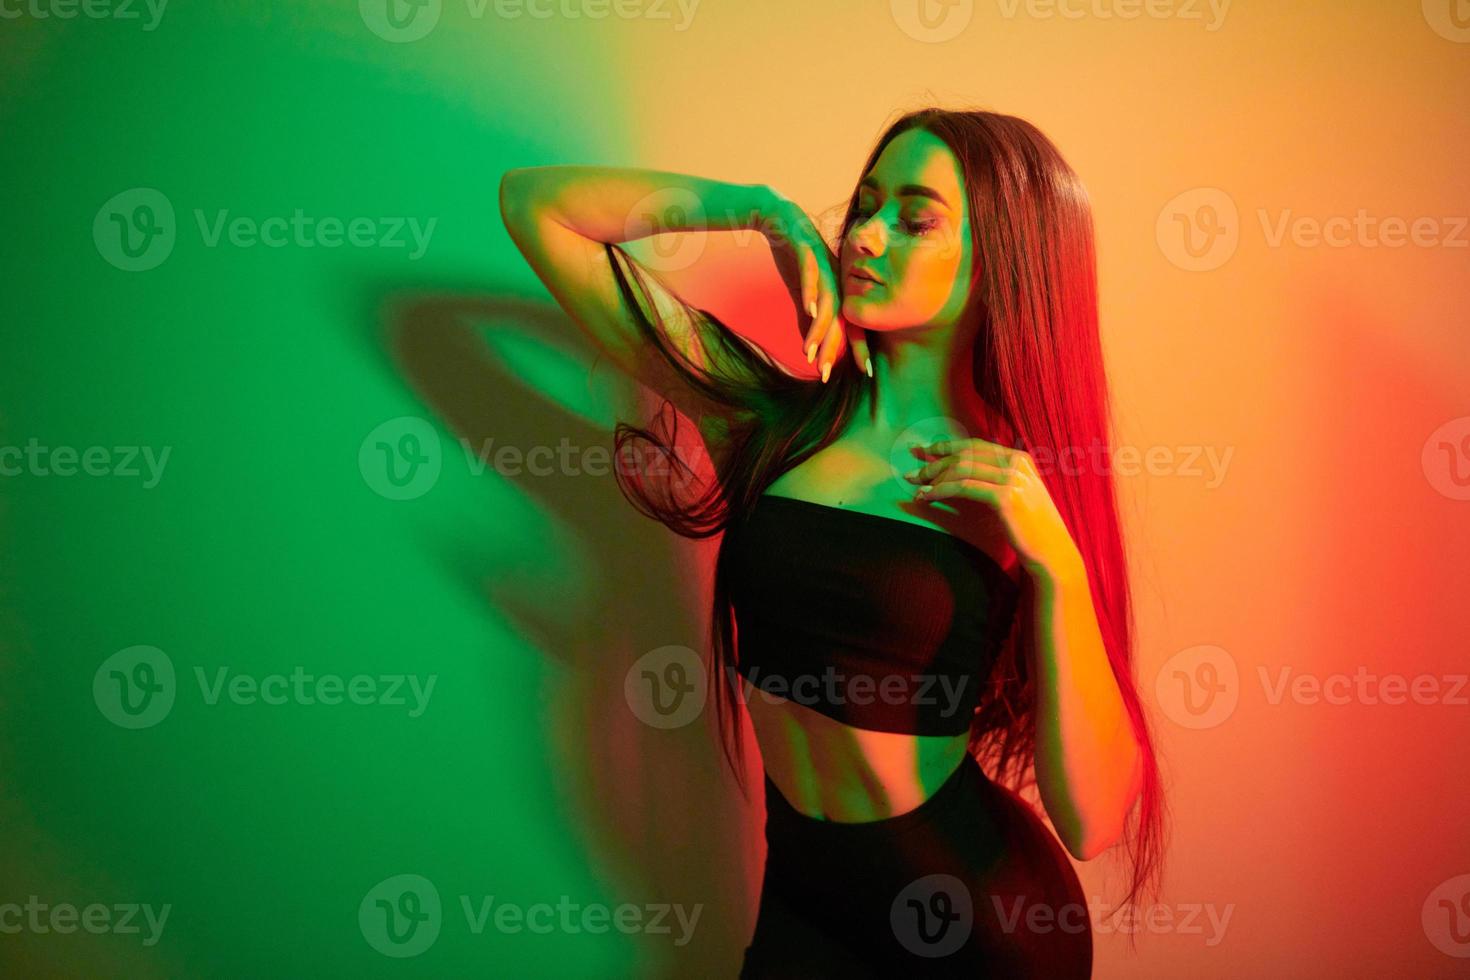 colores verde y rojo. joven de moda parada en el estudio con luz de neón foto